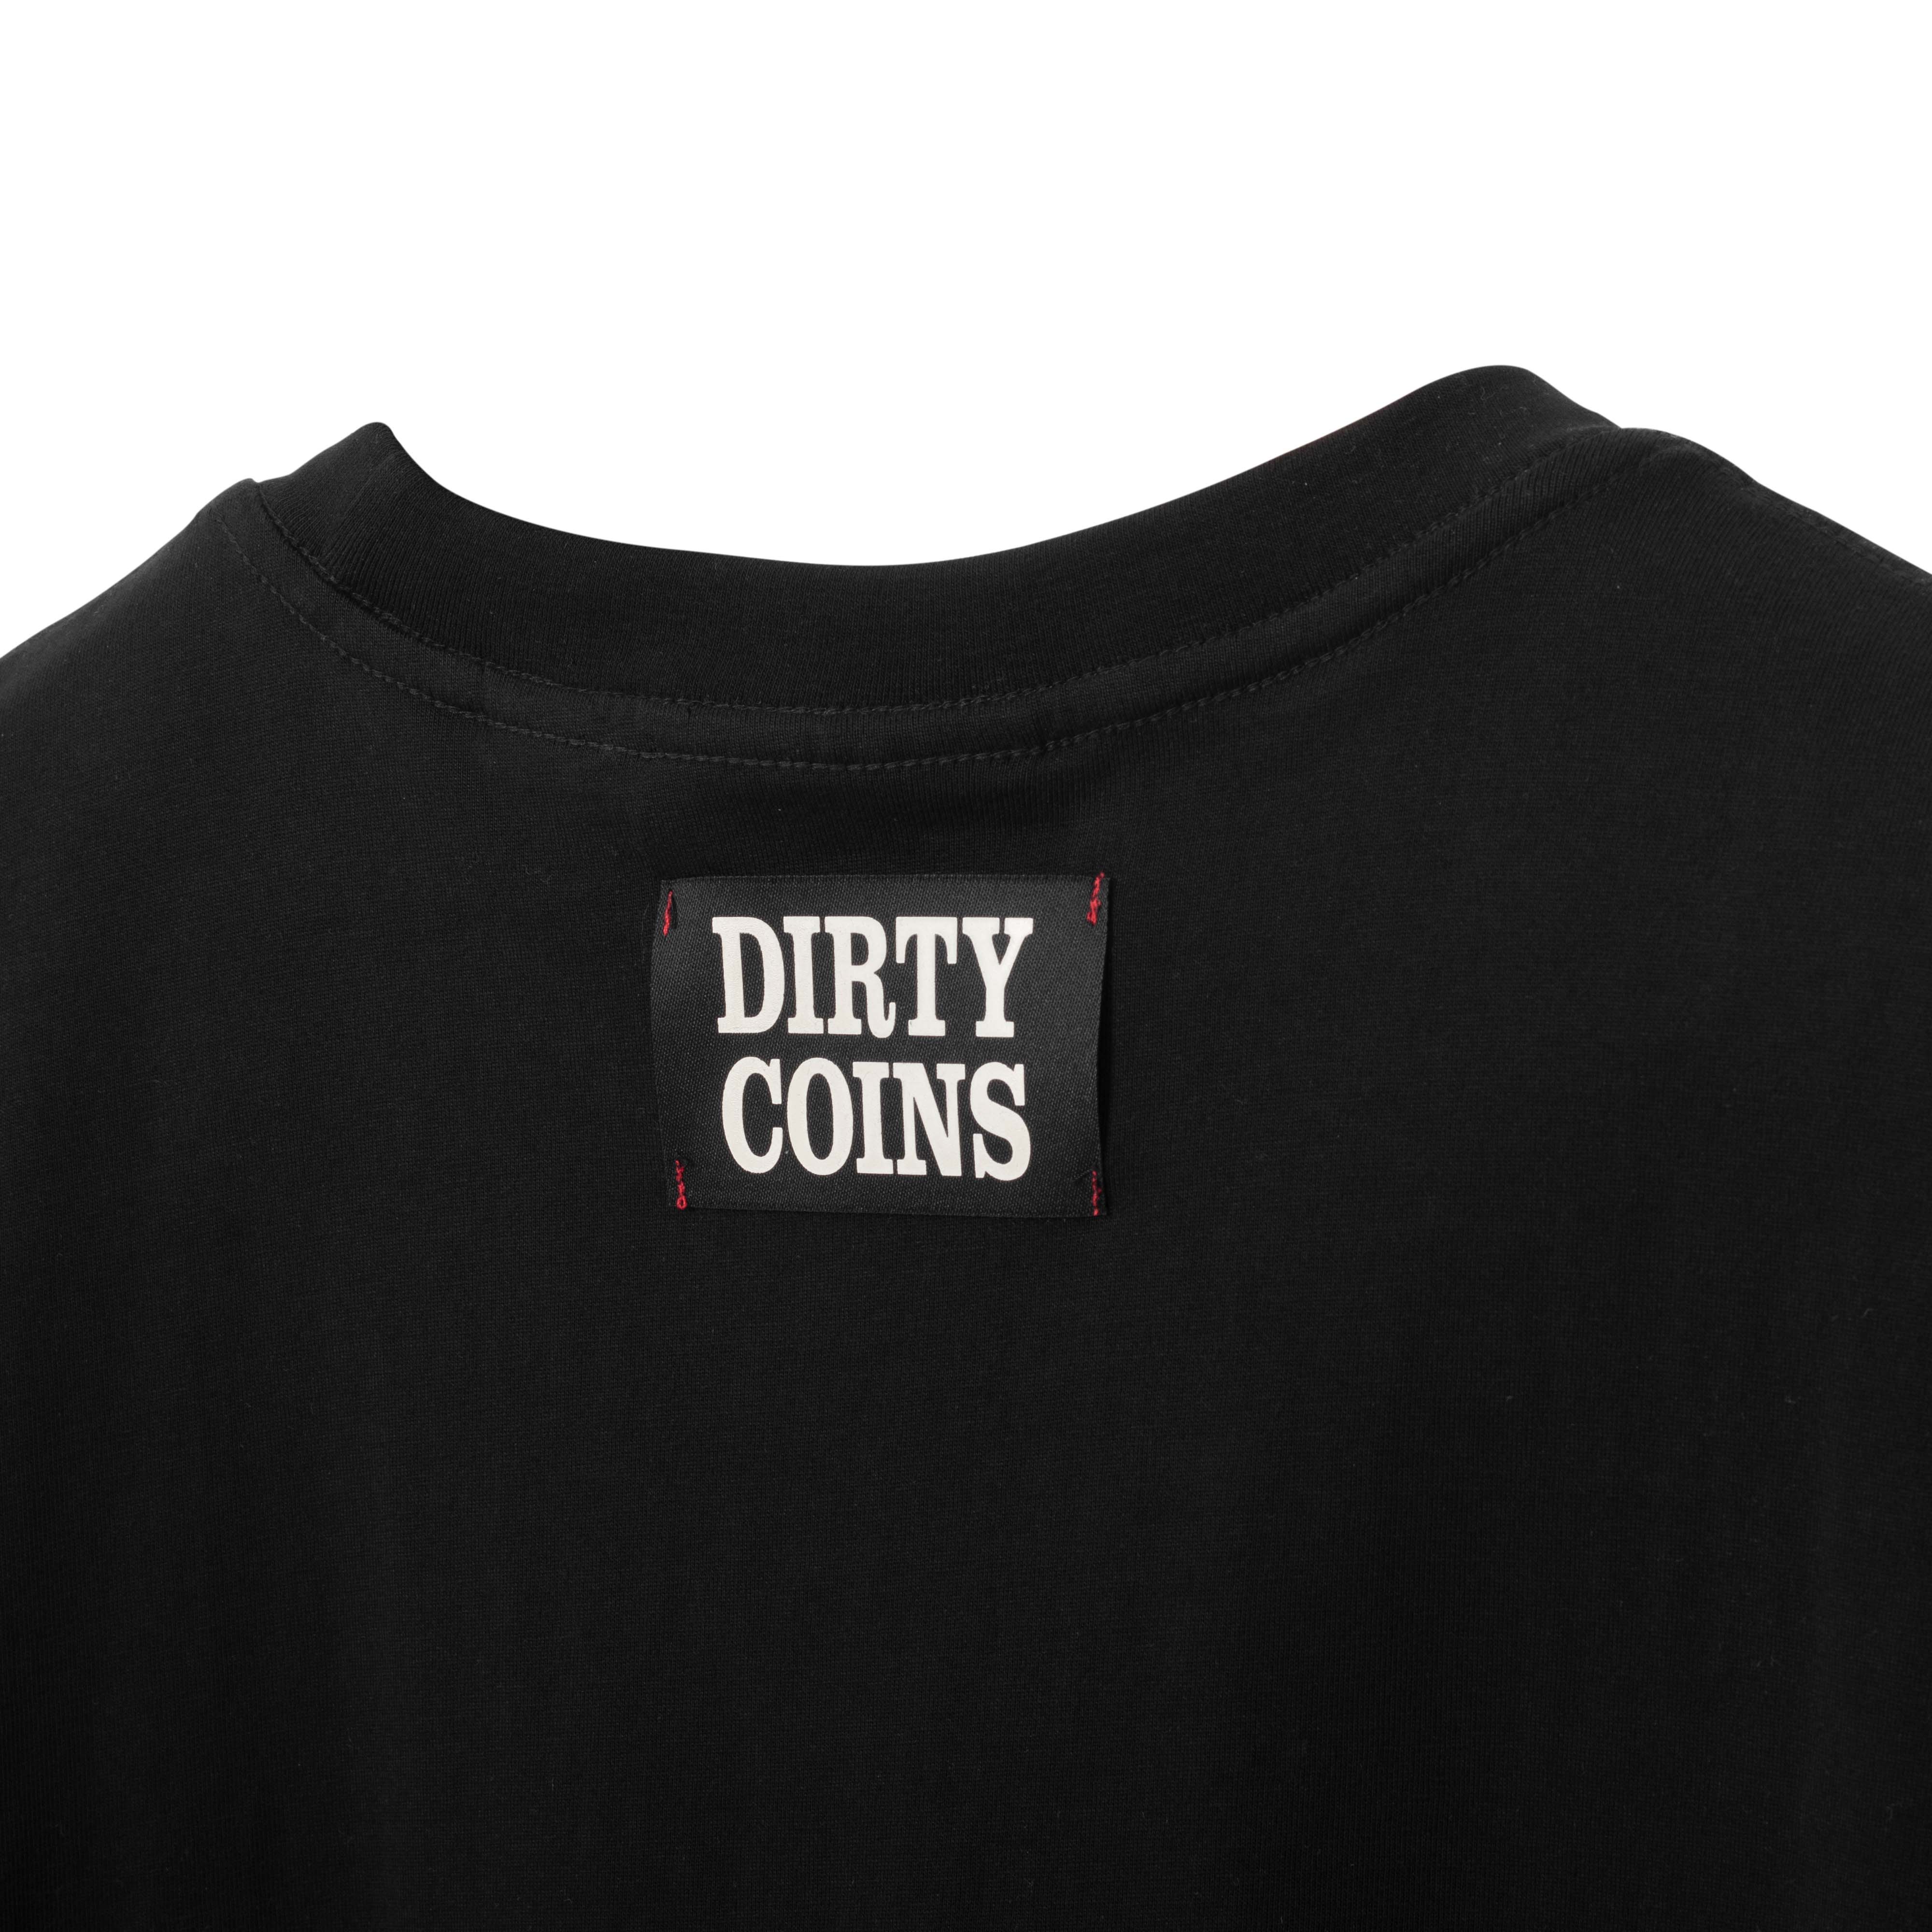 DirtyCoins x LilWuyn Baby Dico T-Shirt - Black